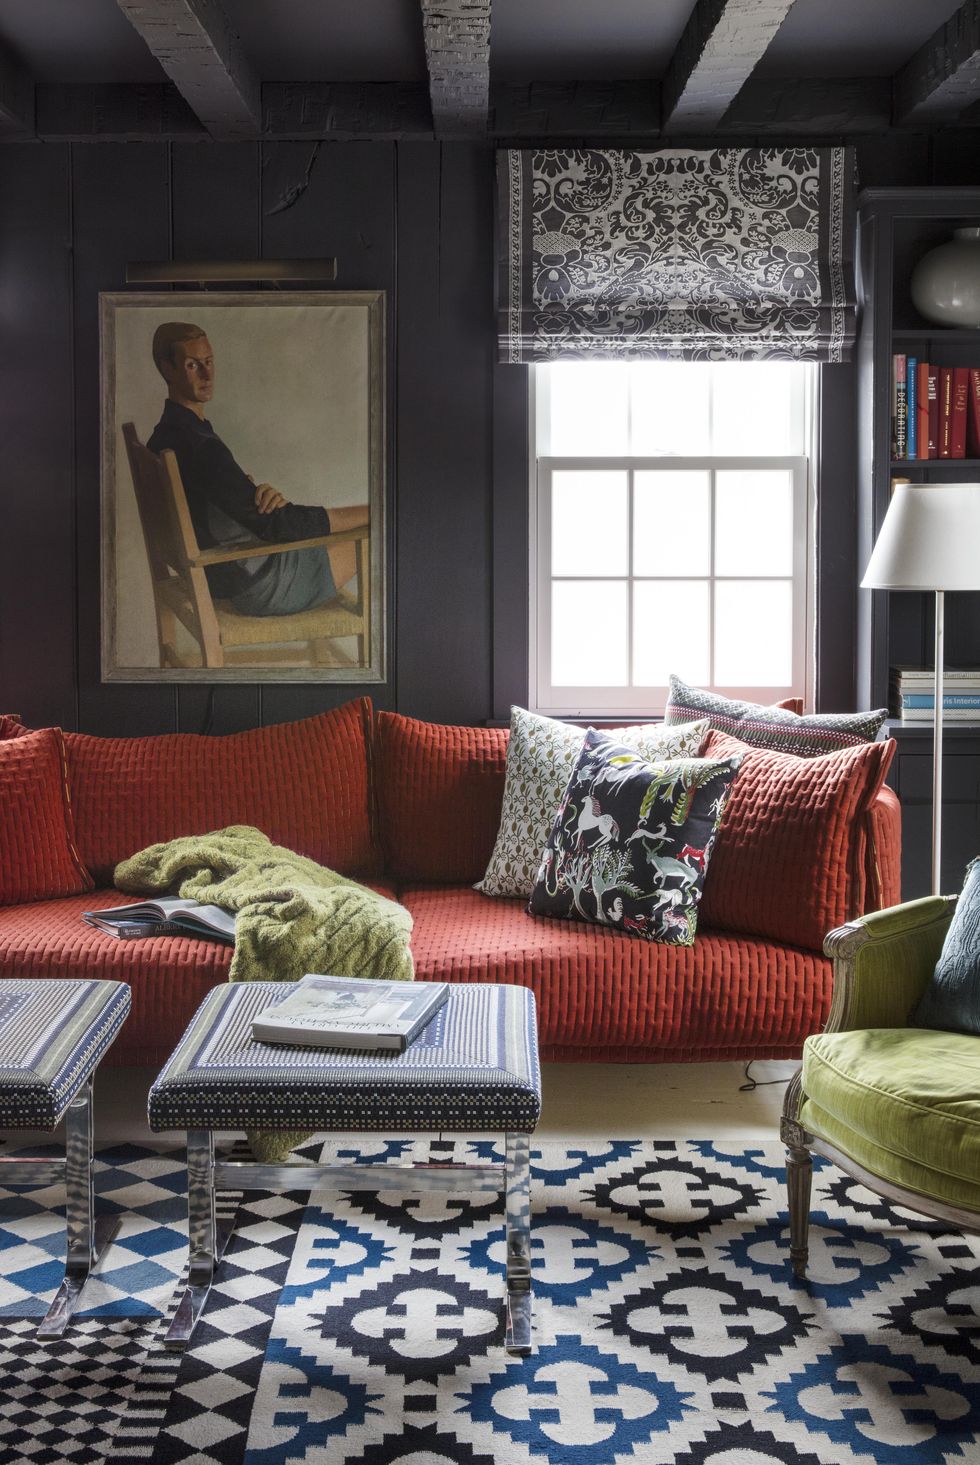 hình ảnh phòng khách nhỏ ấn tượng với tường sơn màu xám đen, sofa màu cam, tranh chân dung treo tường